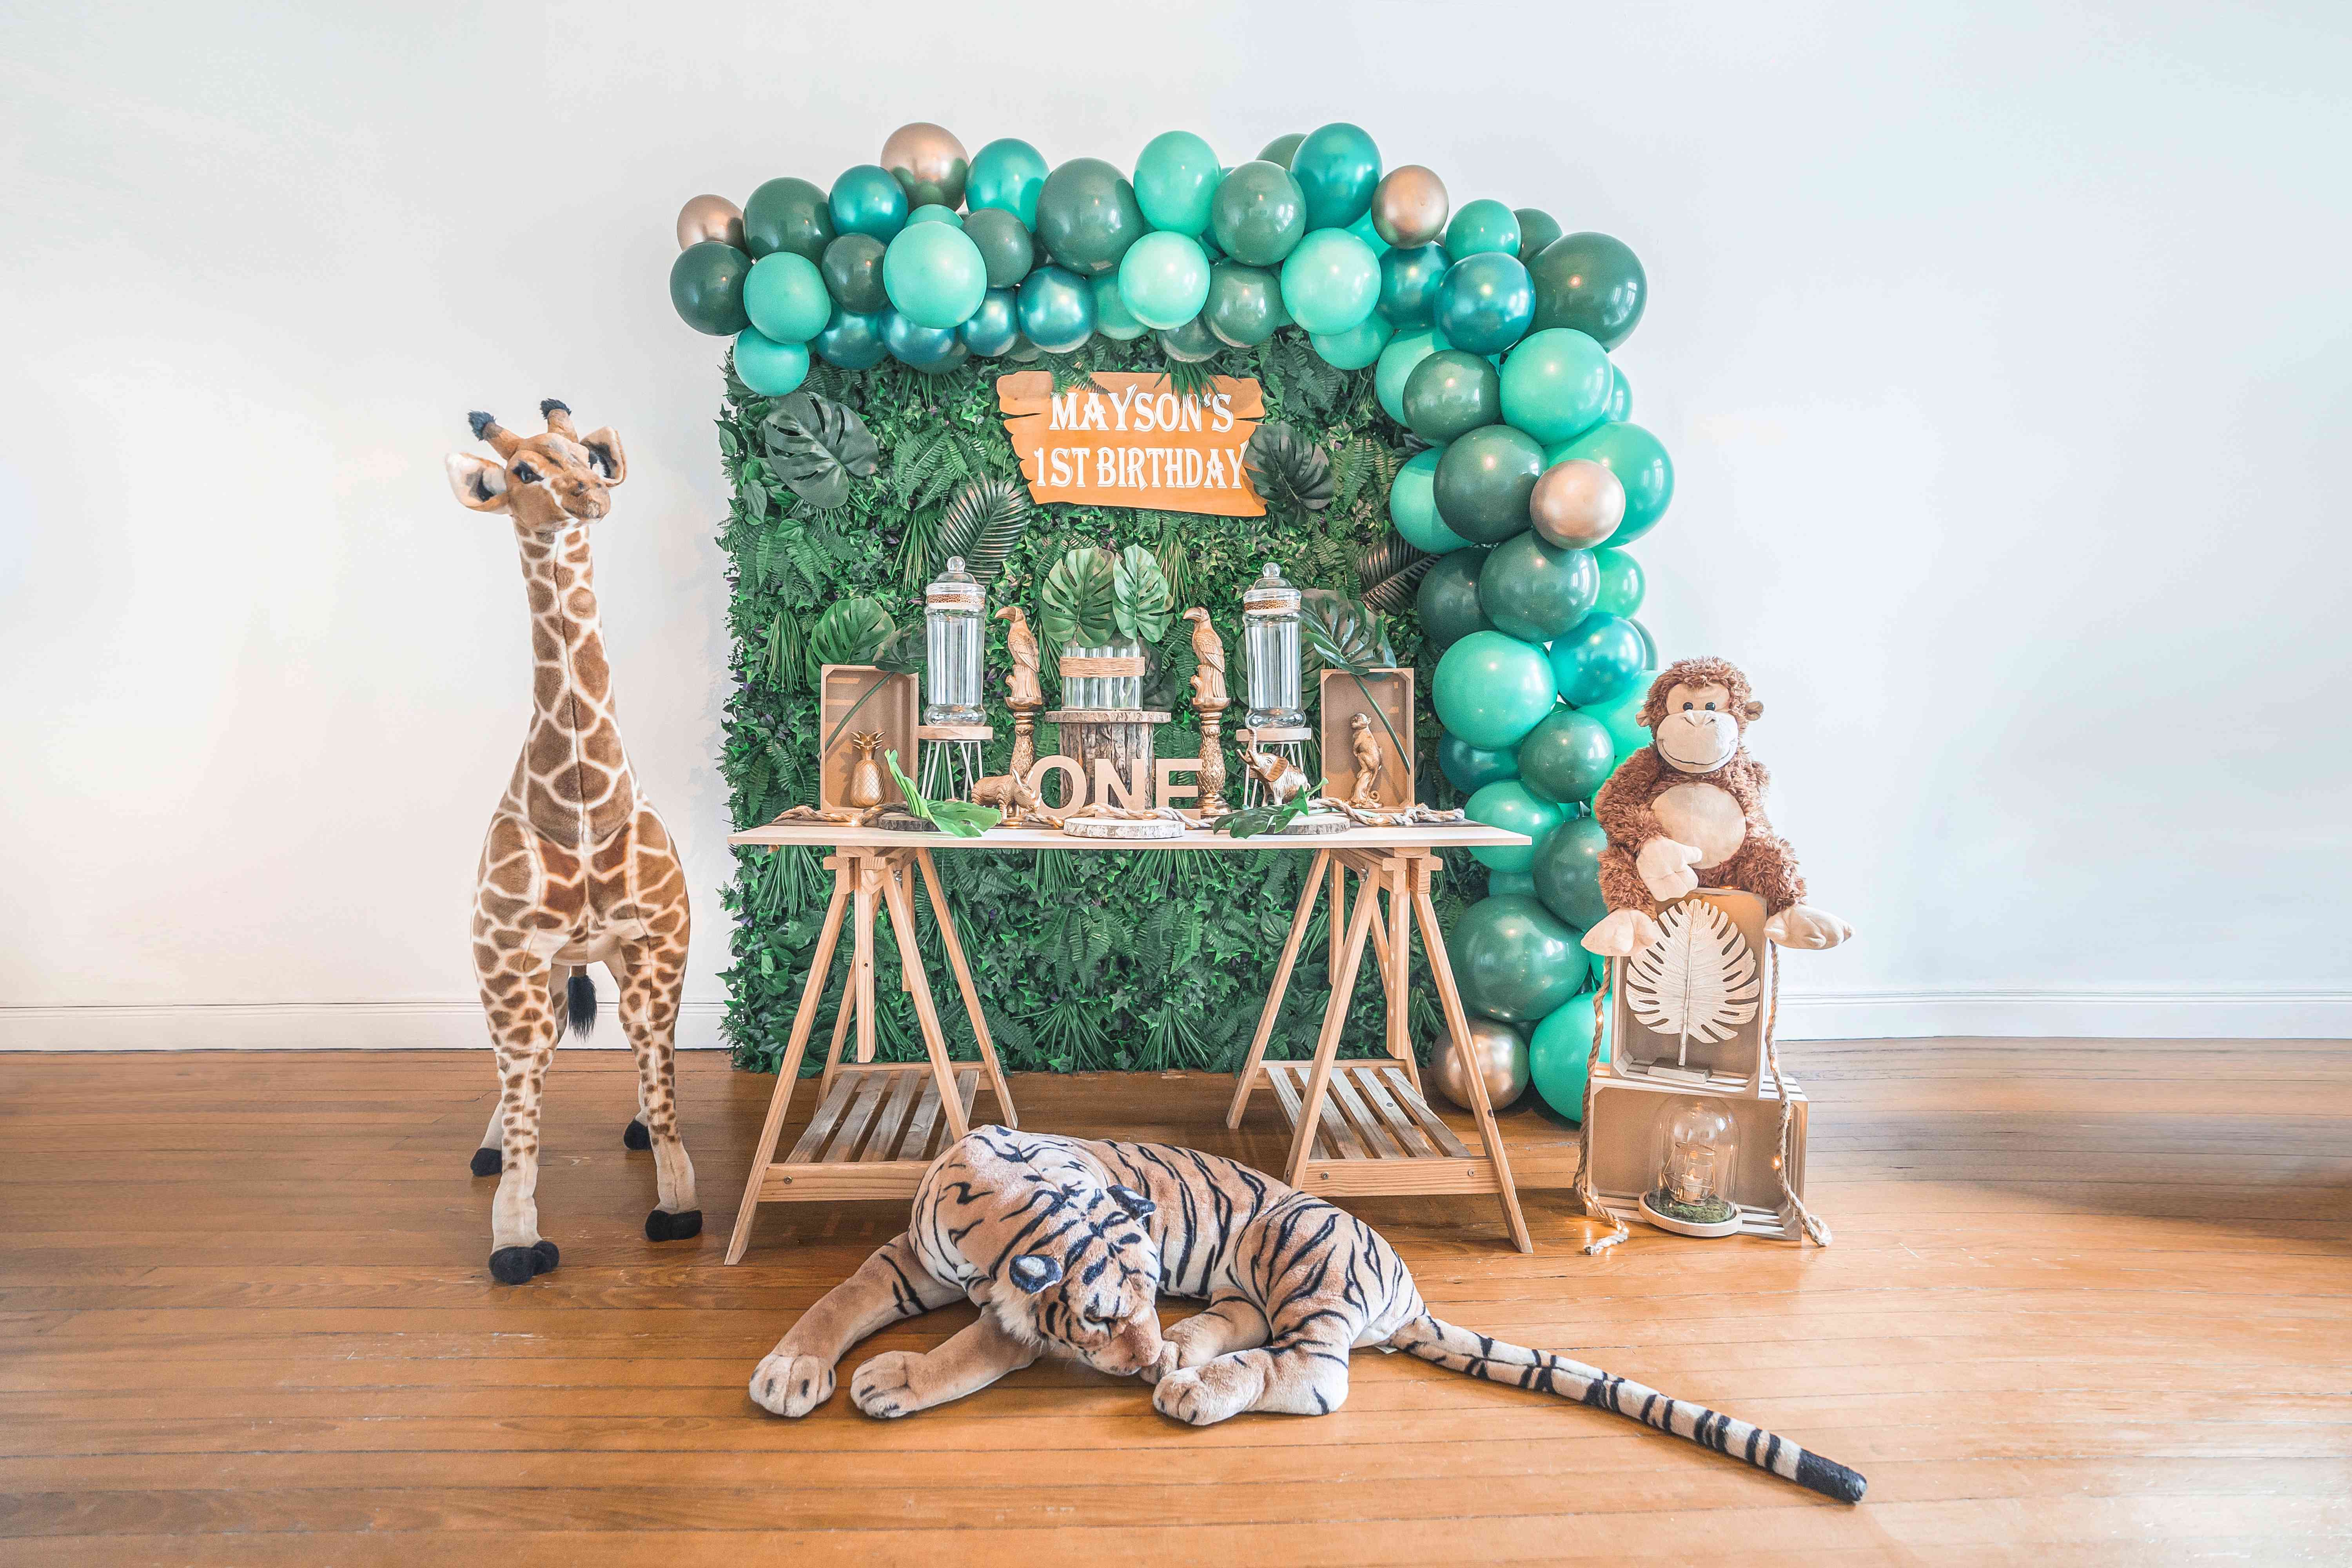 La Zebra Party organisé avec un mélange de ballons vert, doré et à rayures de zèbre